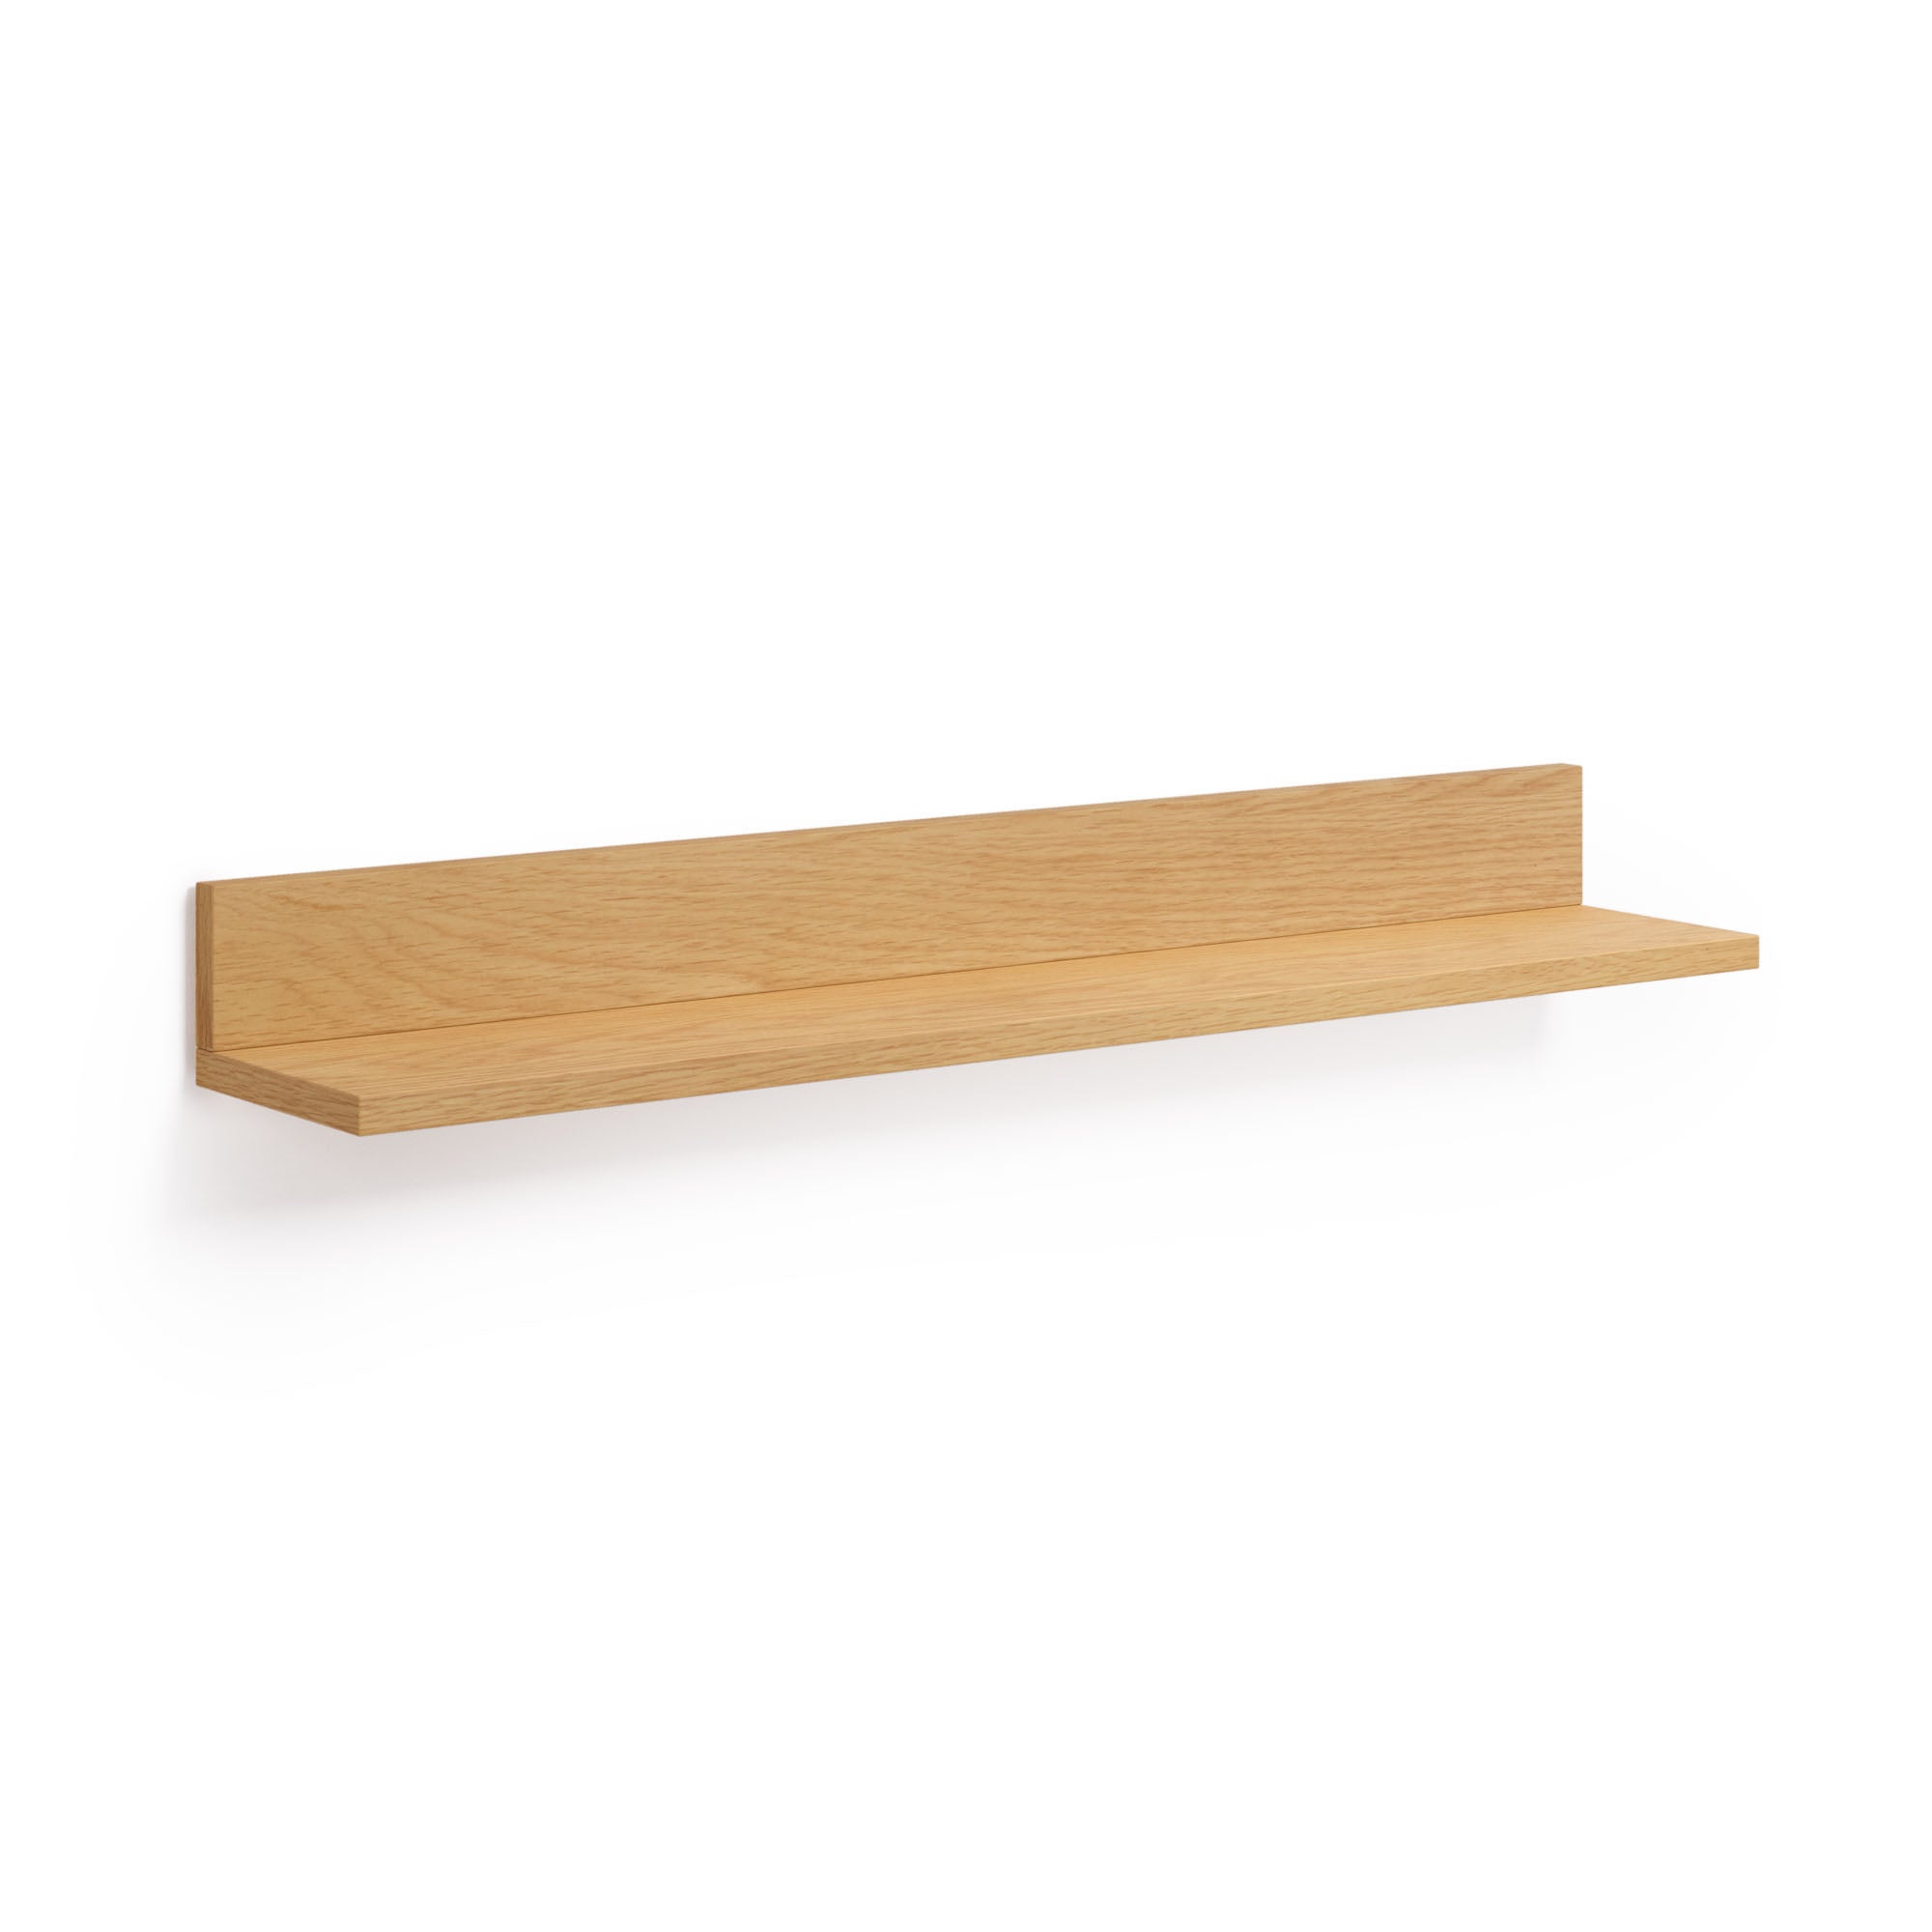 Abilen oak veneer and white lacquer shelf, 80 x 15 cm, FSC™ 100% certified